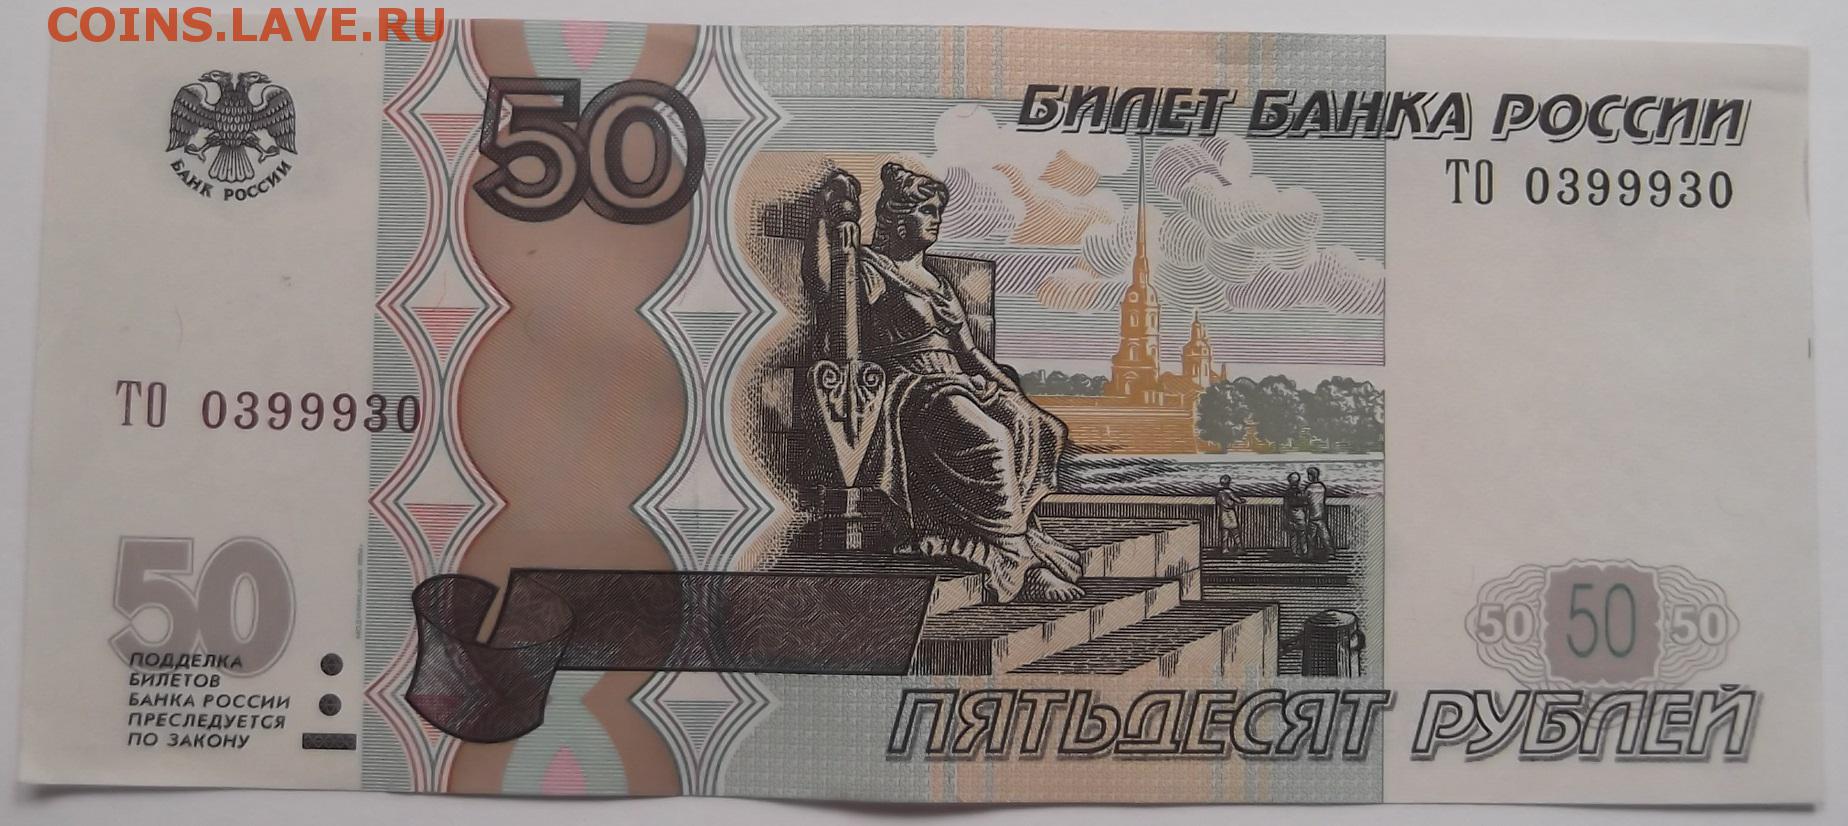 50 рублей на каждого ребенка. 50 Рублей. Купюра 50 рублей. Российские банкноты 50 рублей. Банкнота 50 руб.